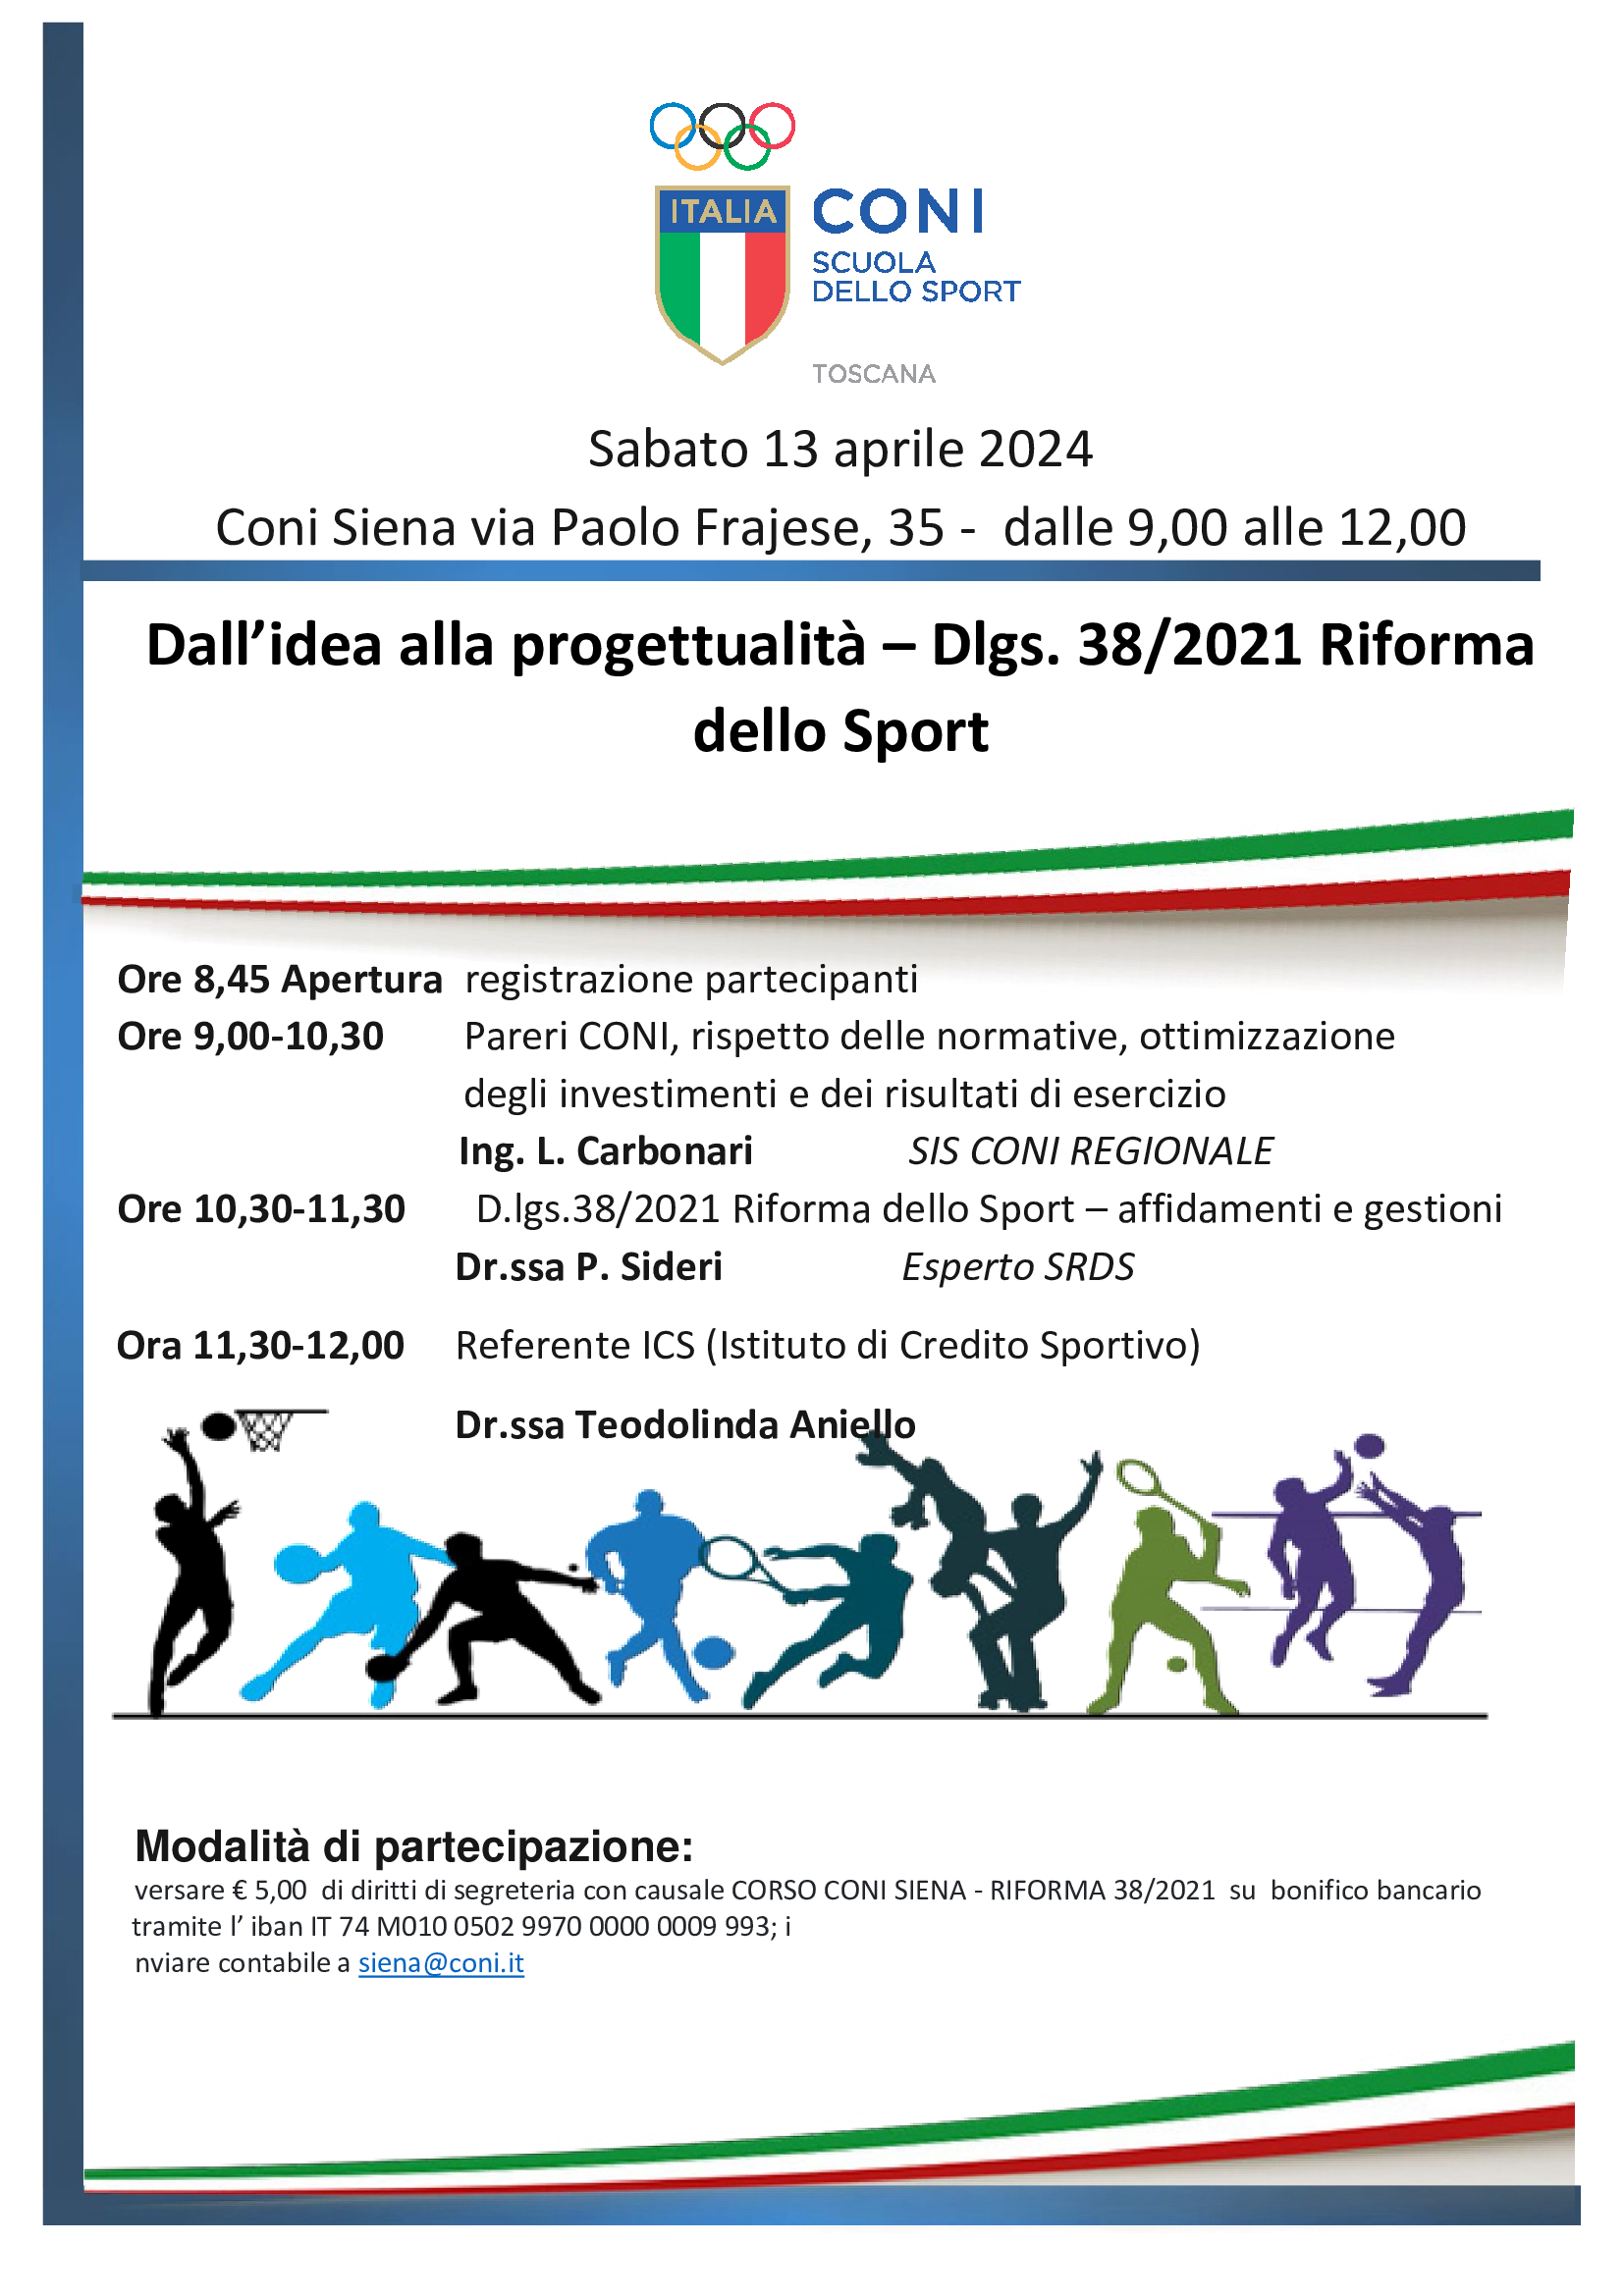 IMPIANTISTICA SPORTIVA: DALL' IDEA ALLA PROGETTUALITA' - Dlgs. 38 Riforma dello Sport - Siena